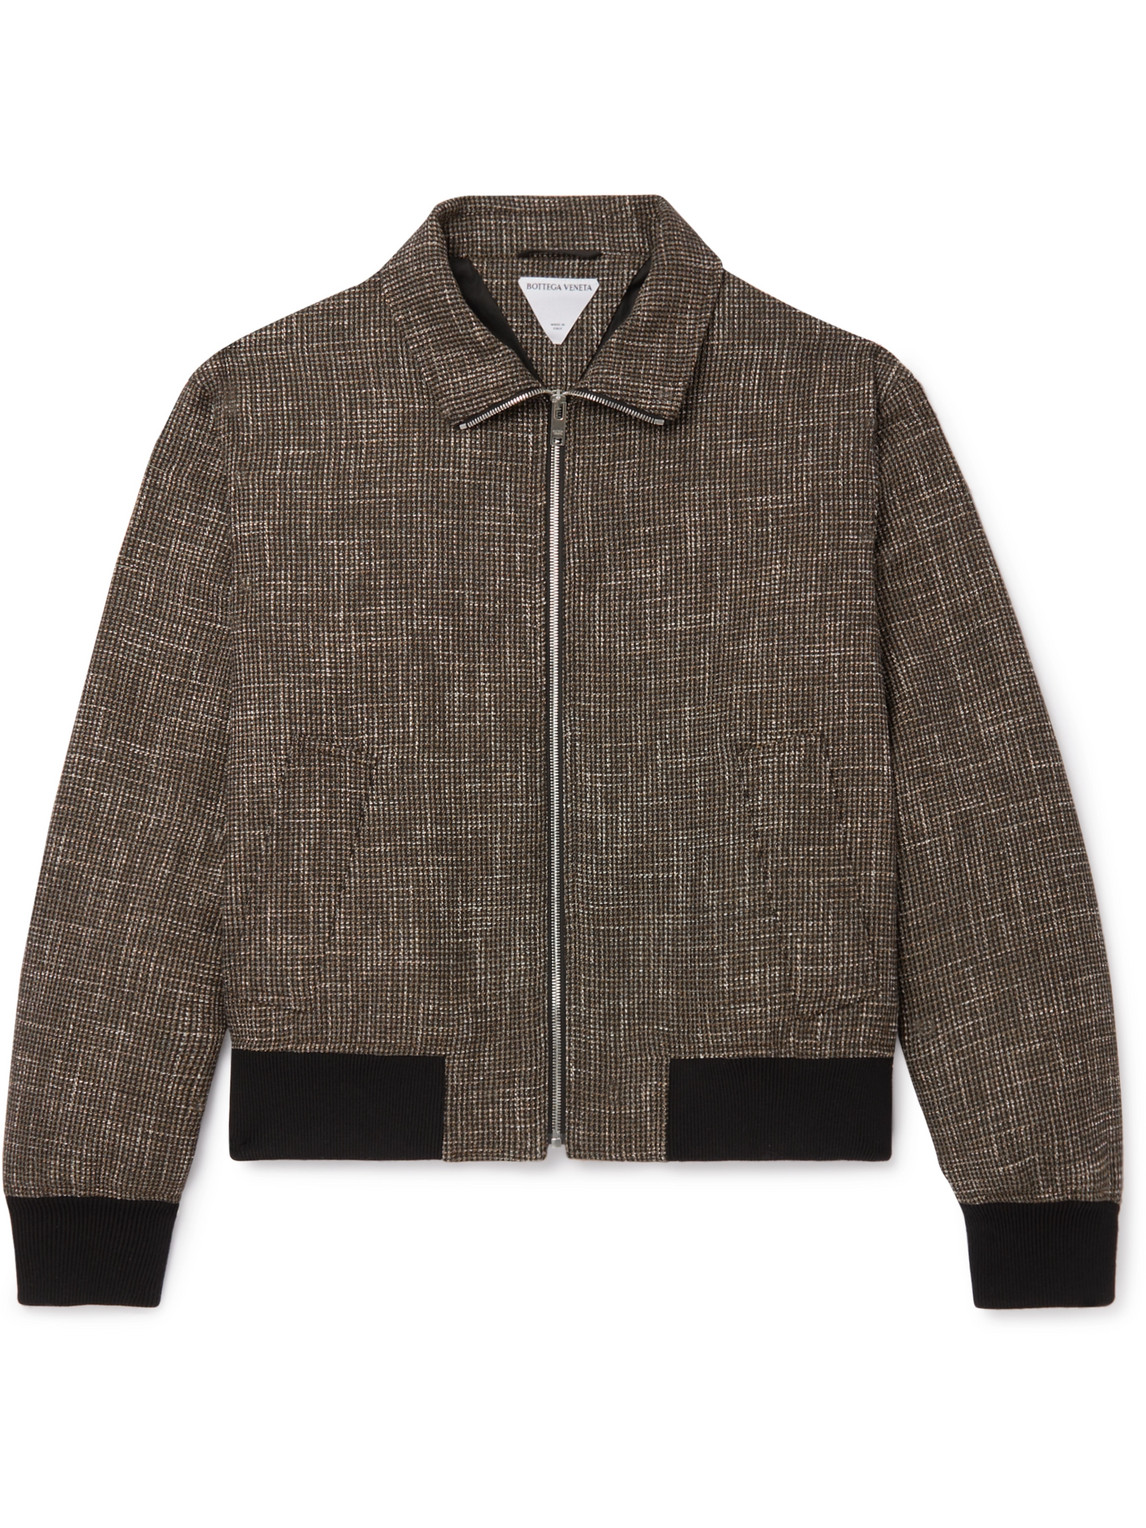 Bottega Veneta Wool-blend Tweed Blouson Jacket In Brown